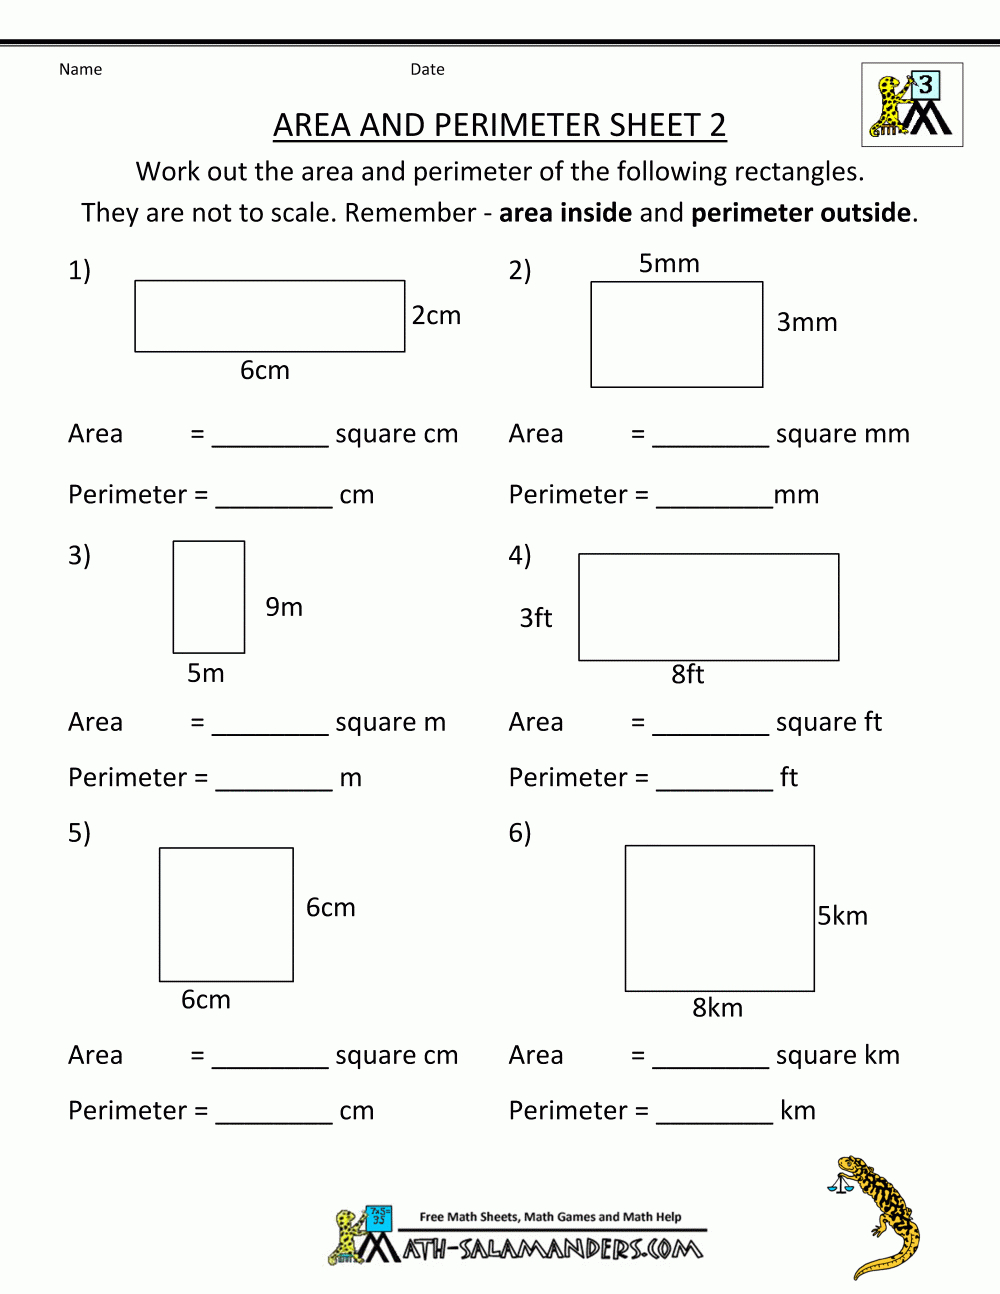 Free Printable Math Worksheets Area Perimeter 2 | Math | Pinterest - Year 2 Maths Worksheets Free Printable